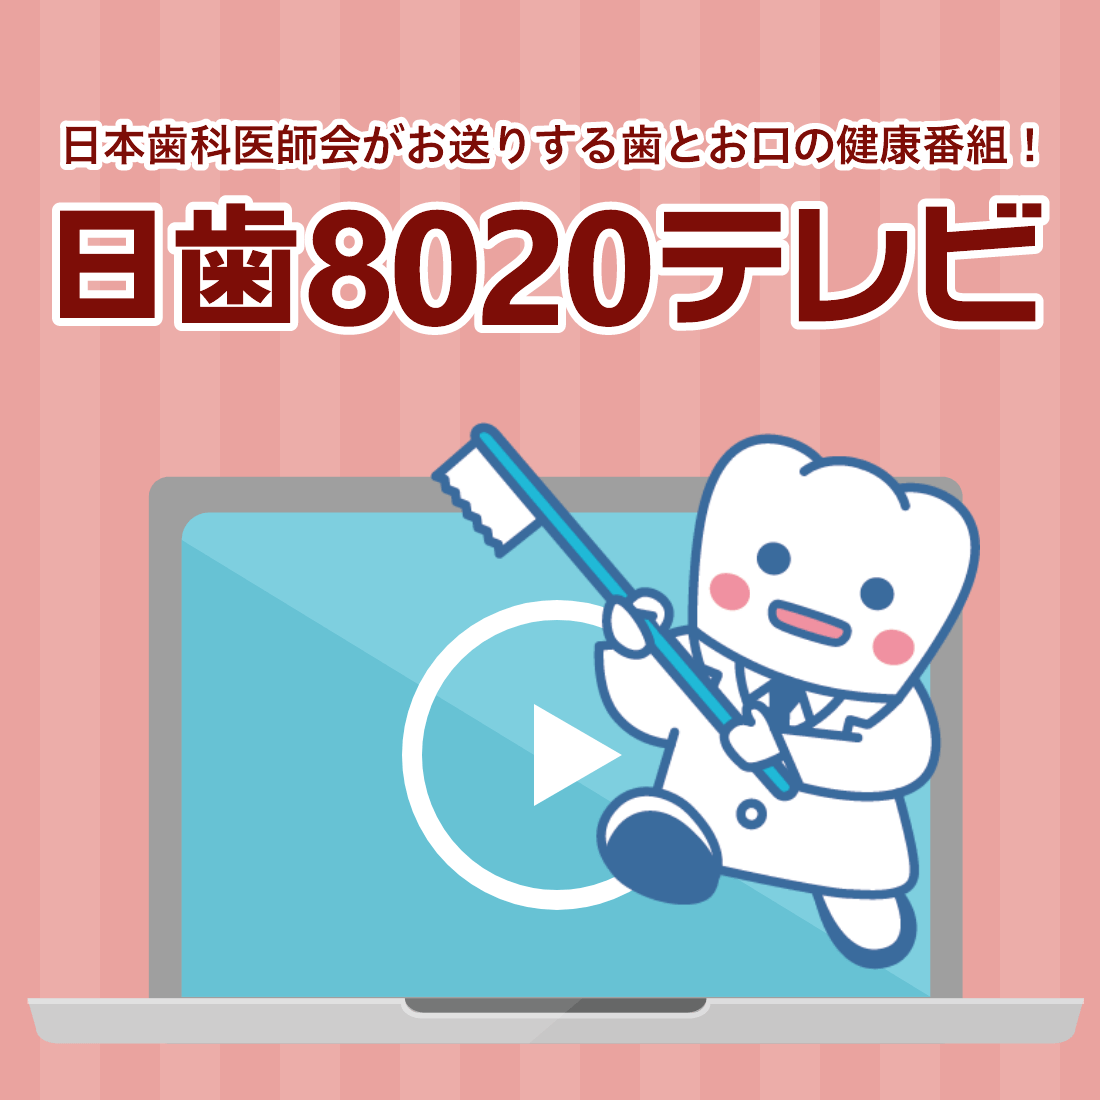 8020テレビ